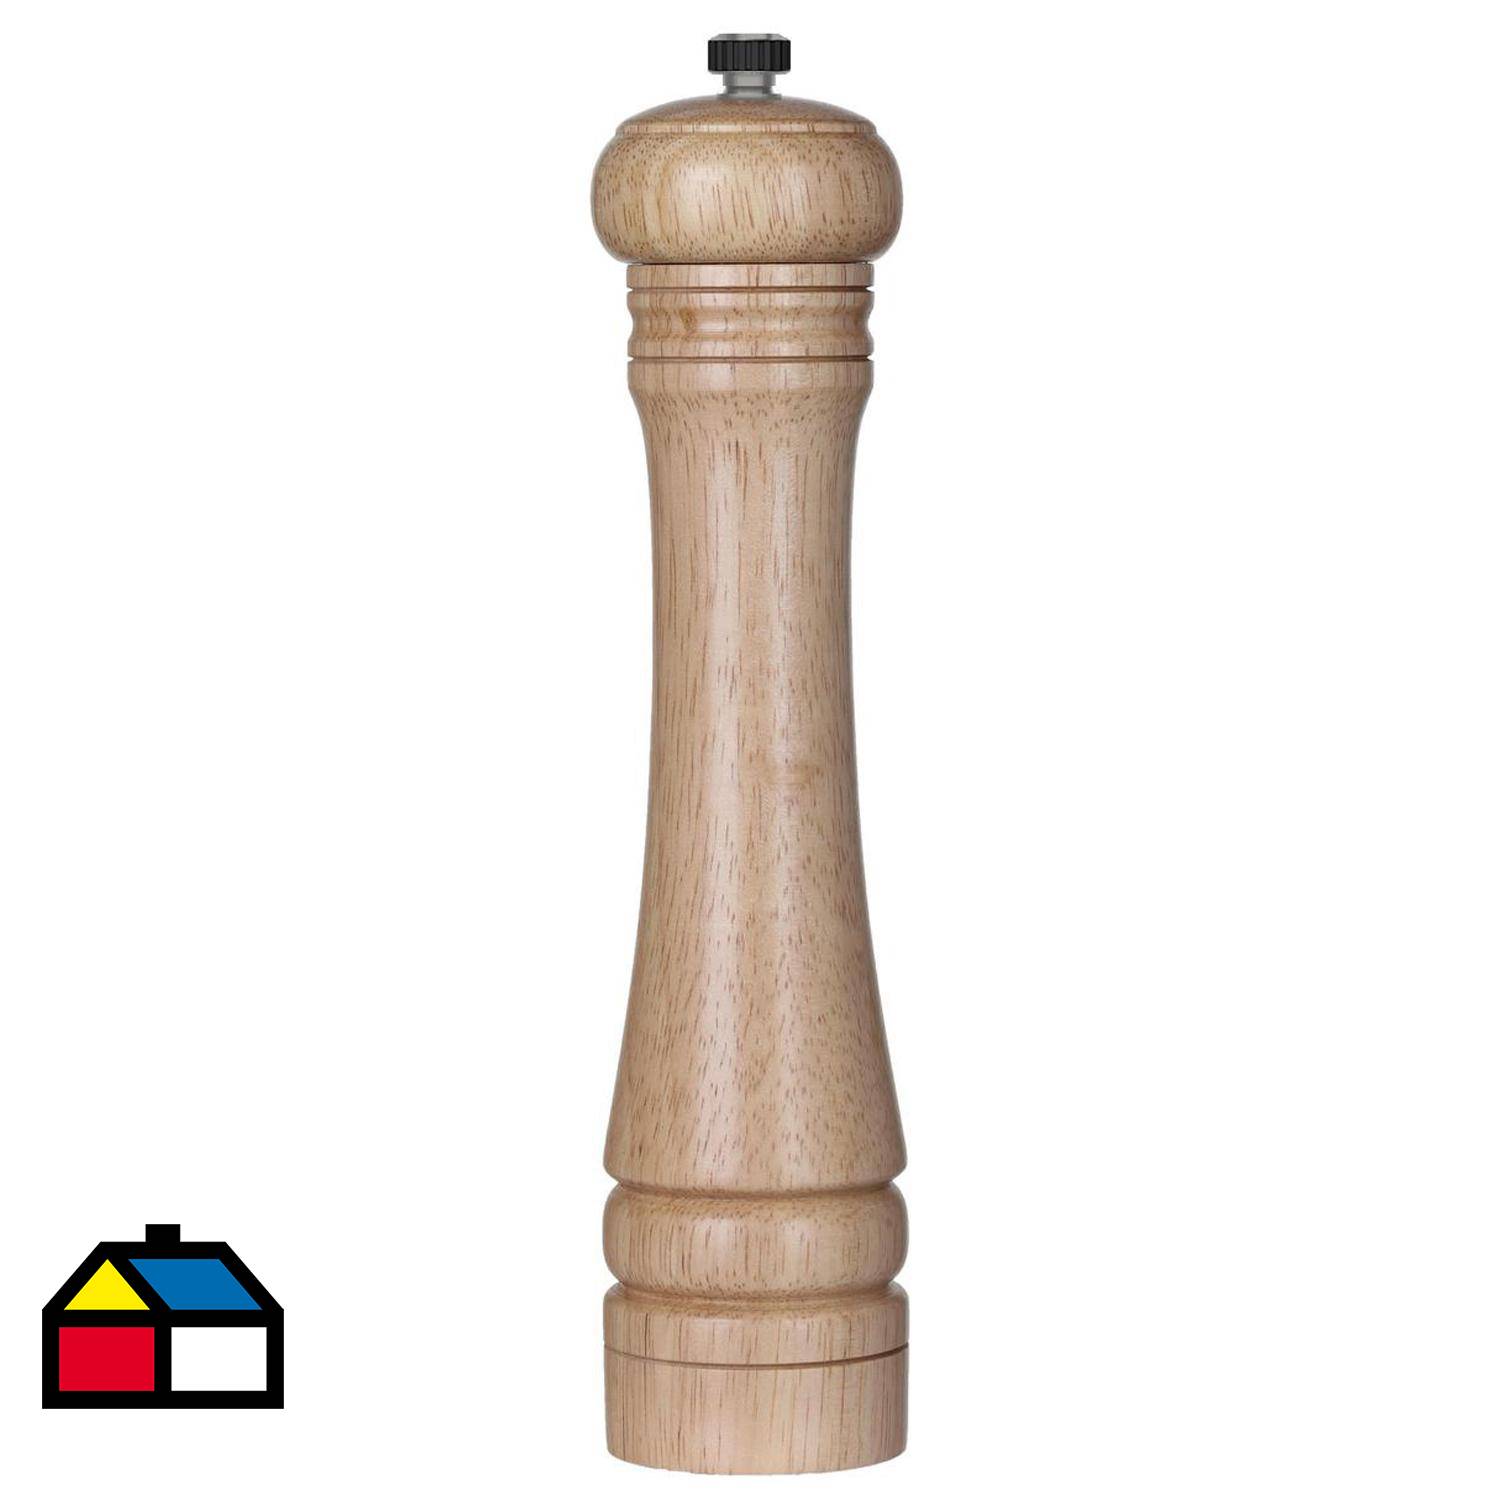 Comprar molinillo de pimienta clásico de madera Cole & Mason. 31 cm